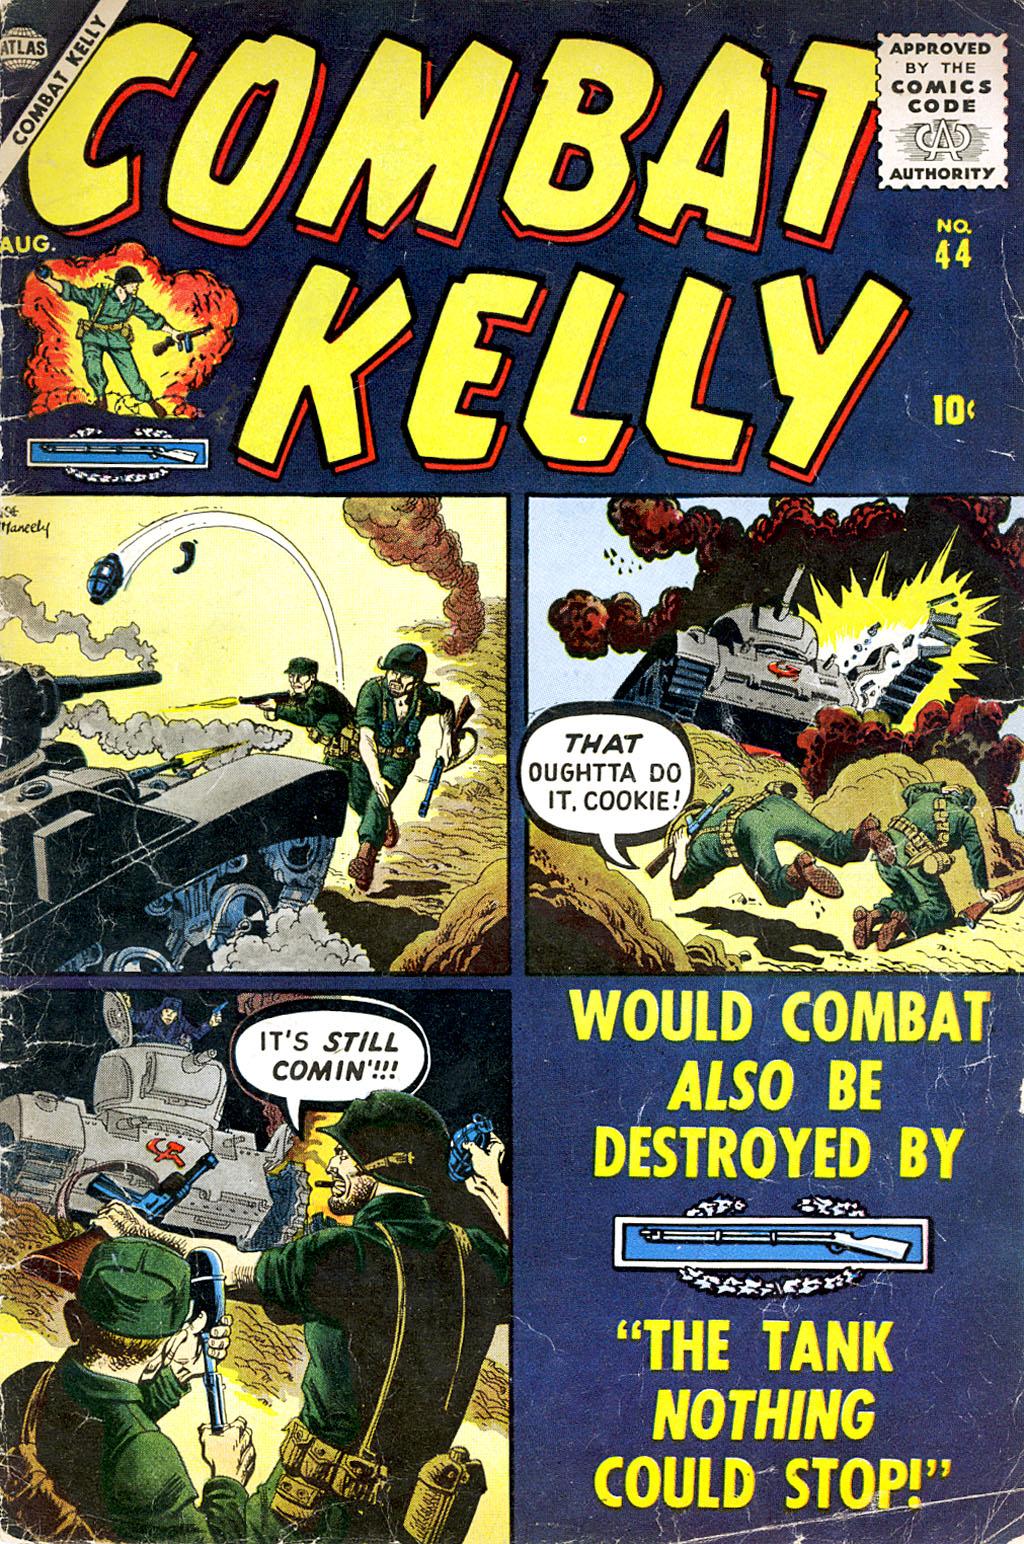 Combat Kelly Vol. 1 #44